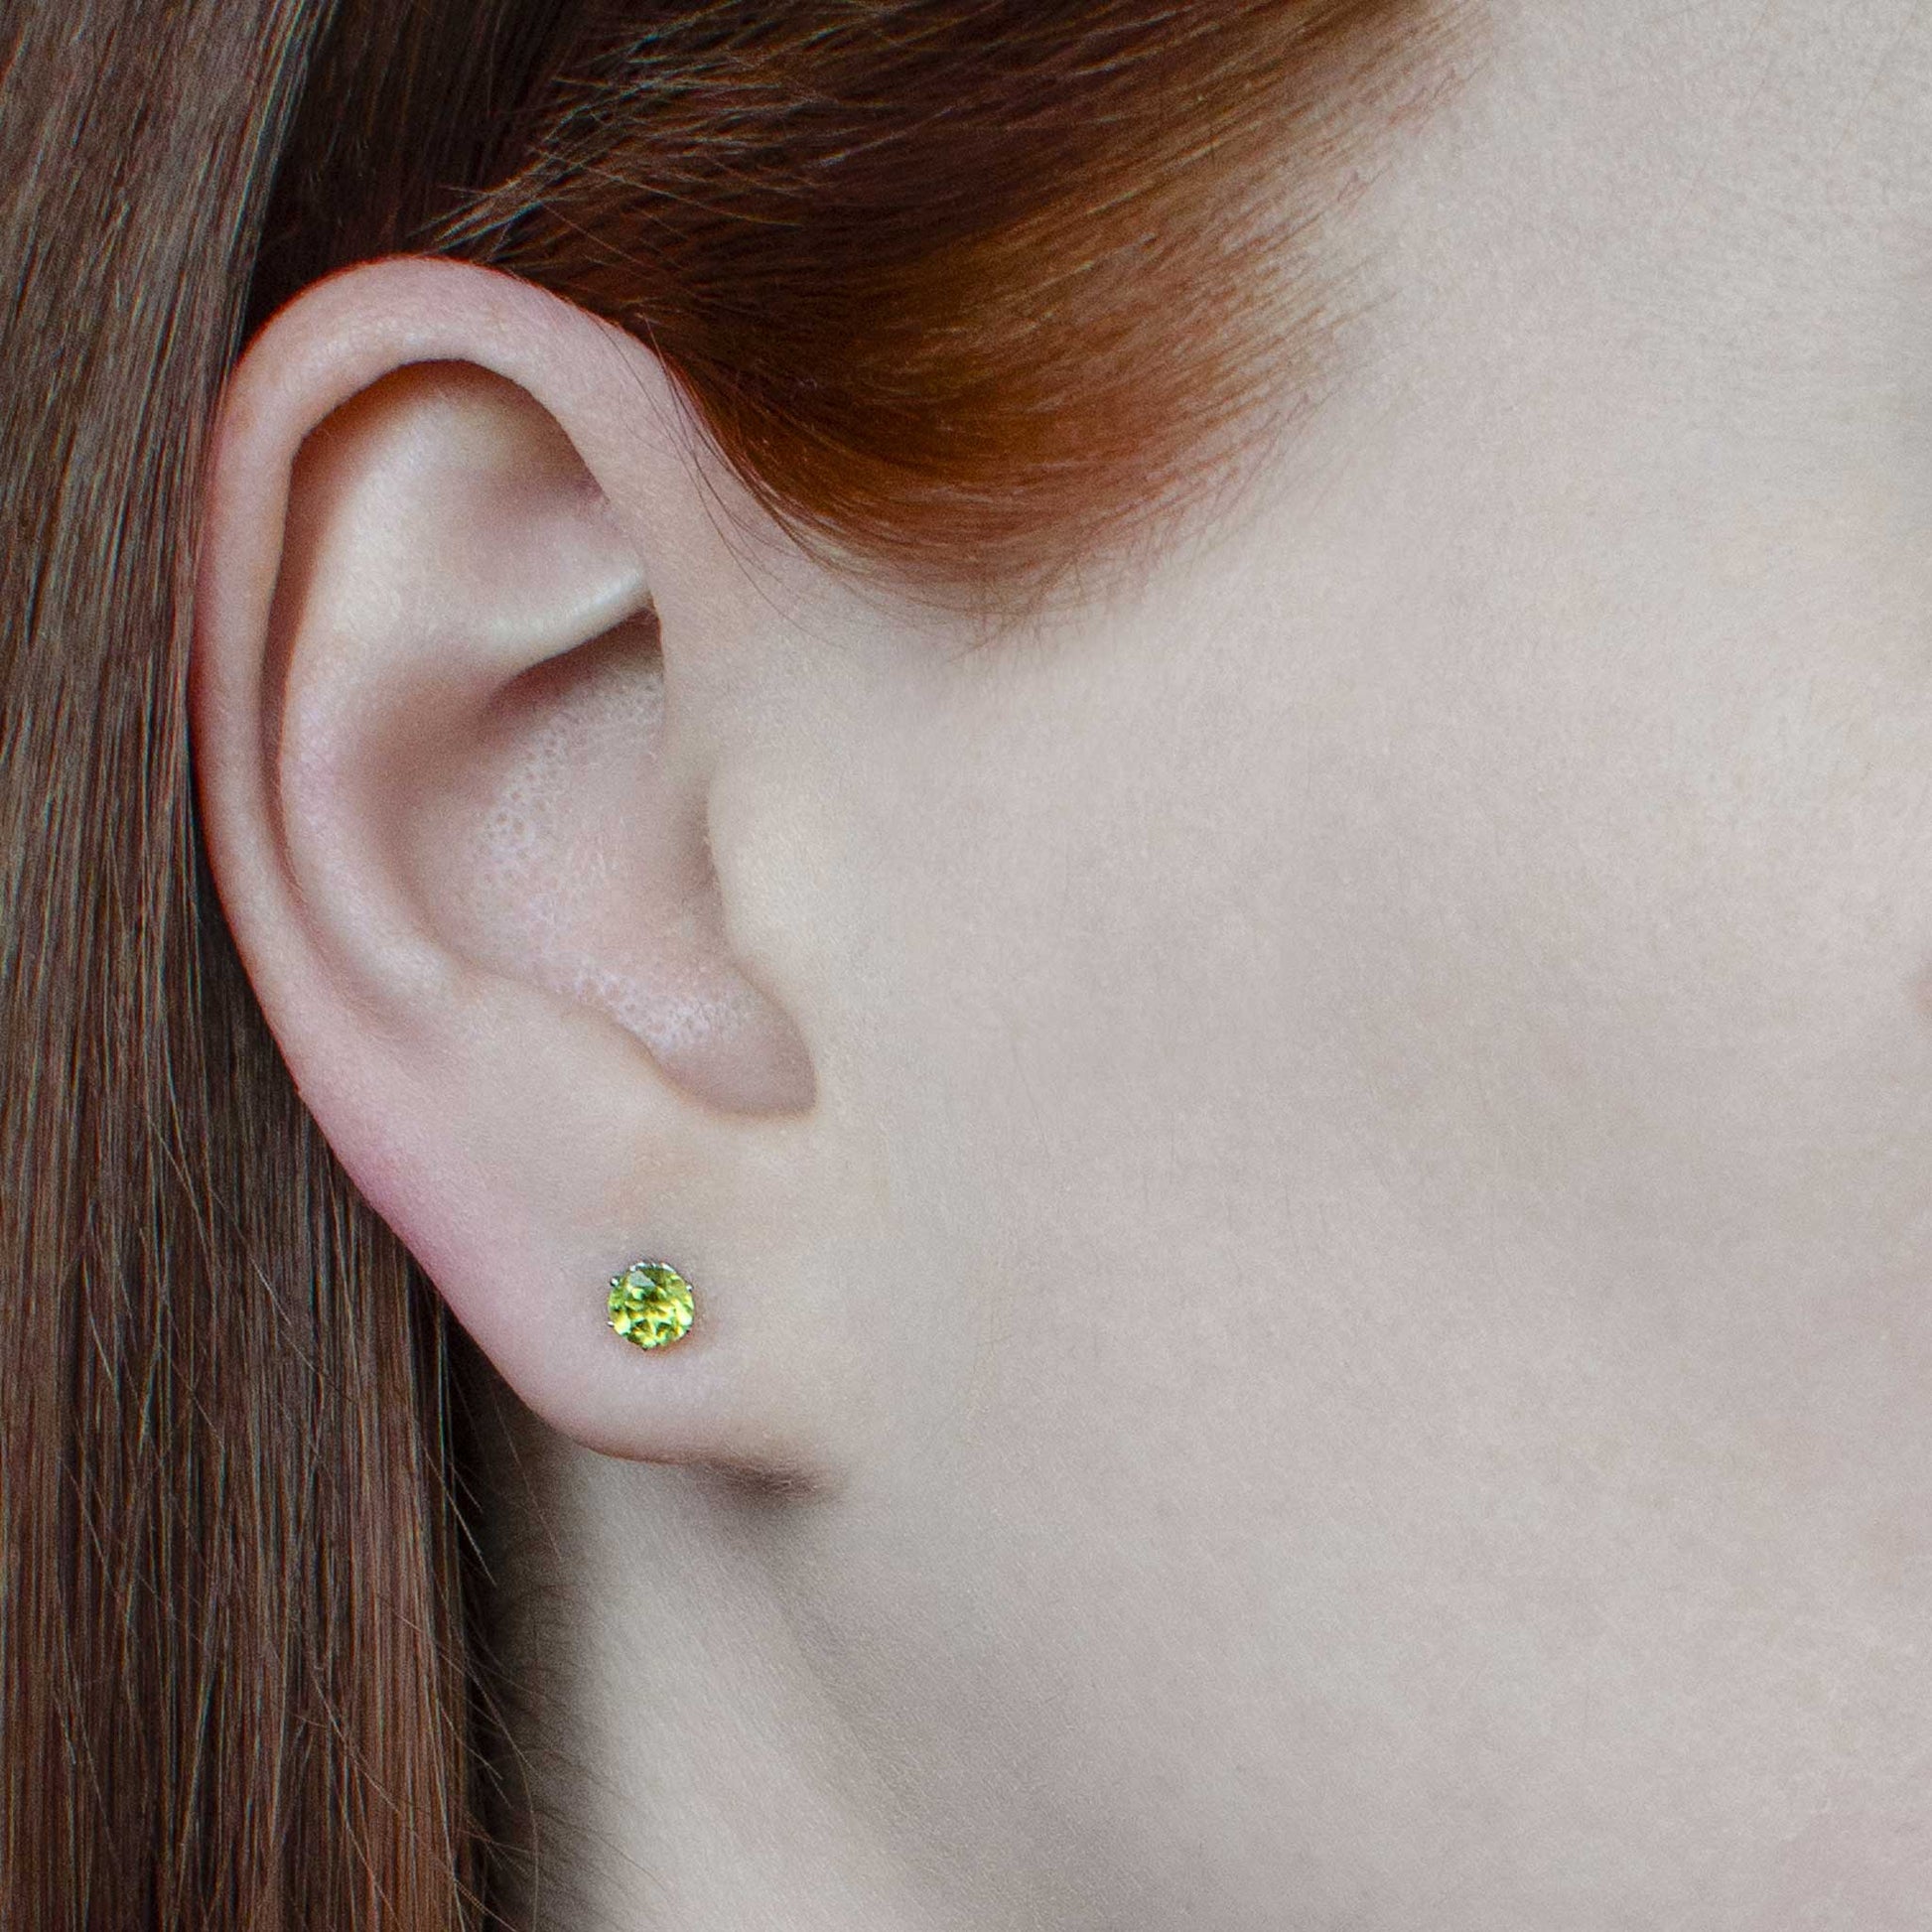 Woman wearing dainty green Peridot stud earrings in earlobe